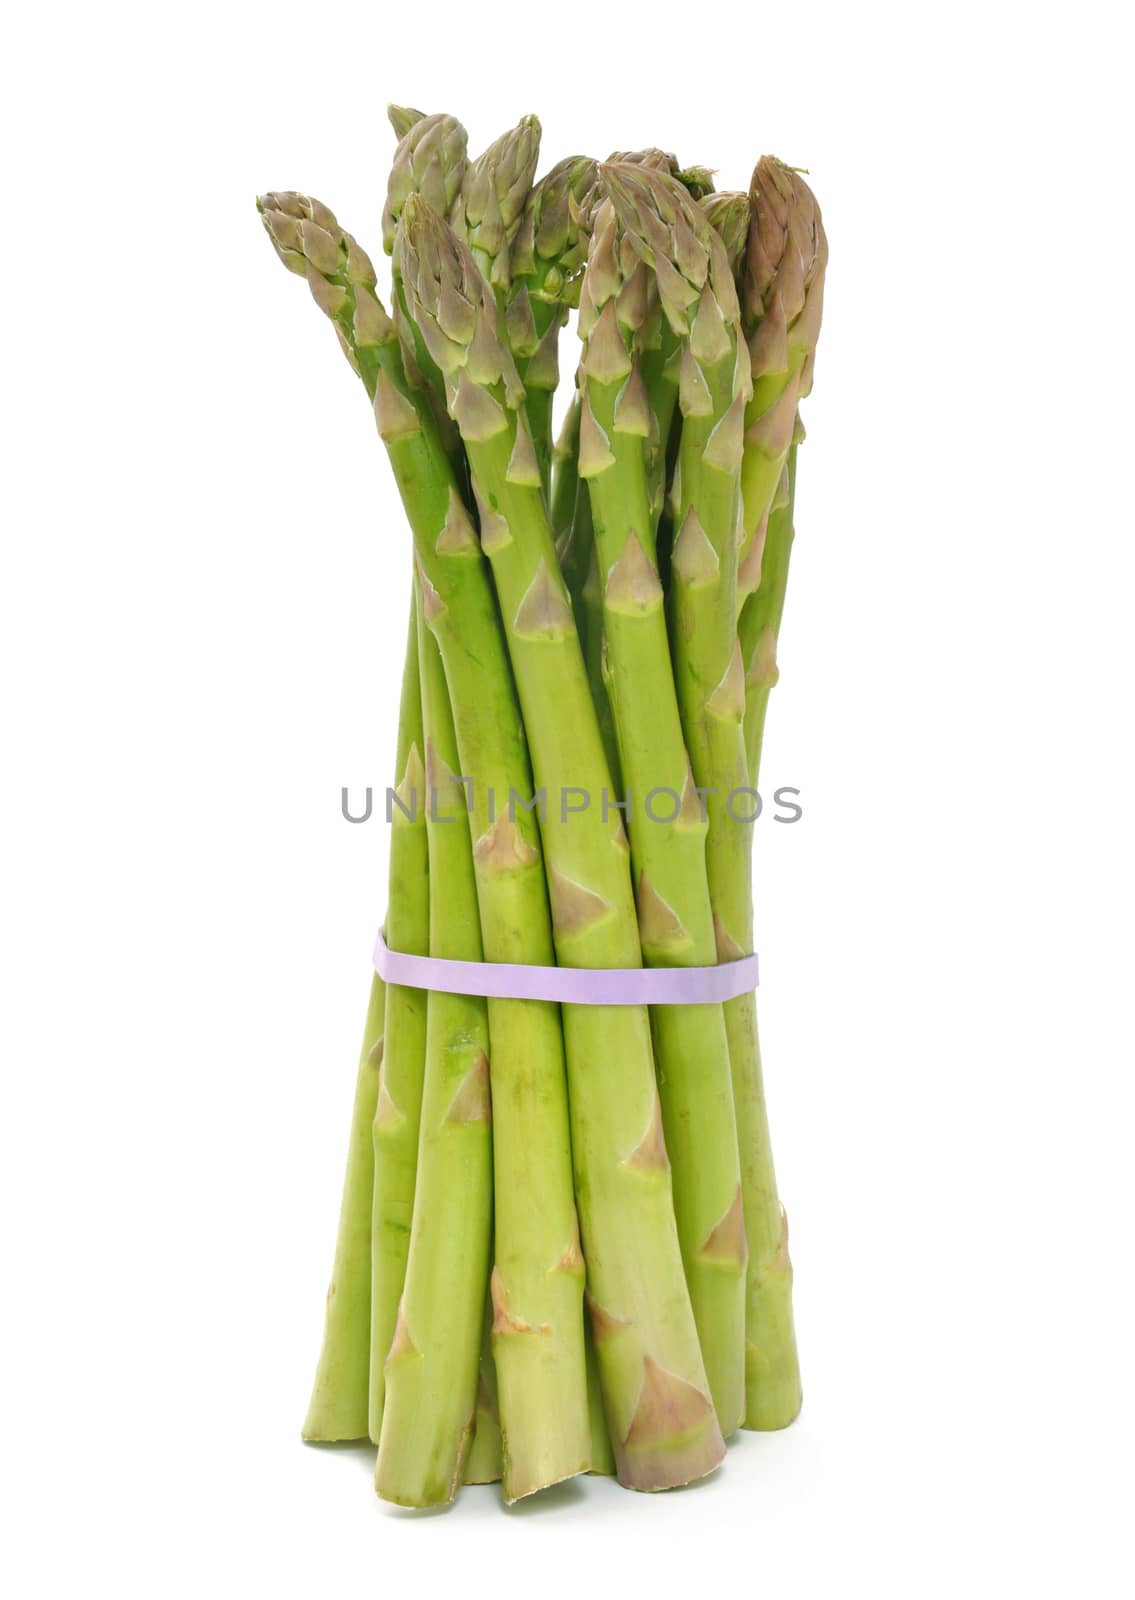 Asparagus by svanhorn